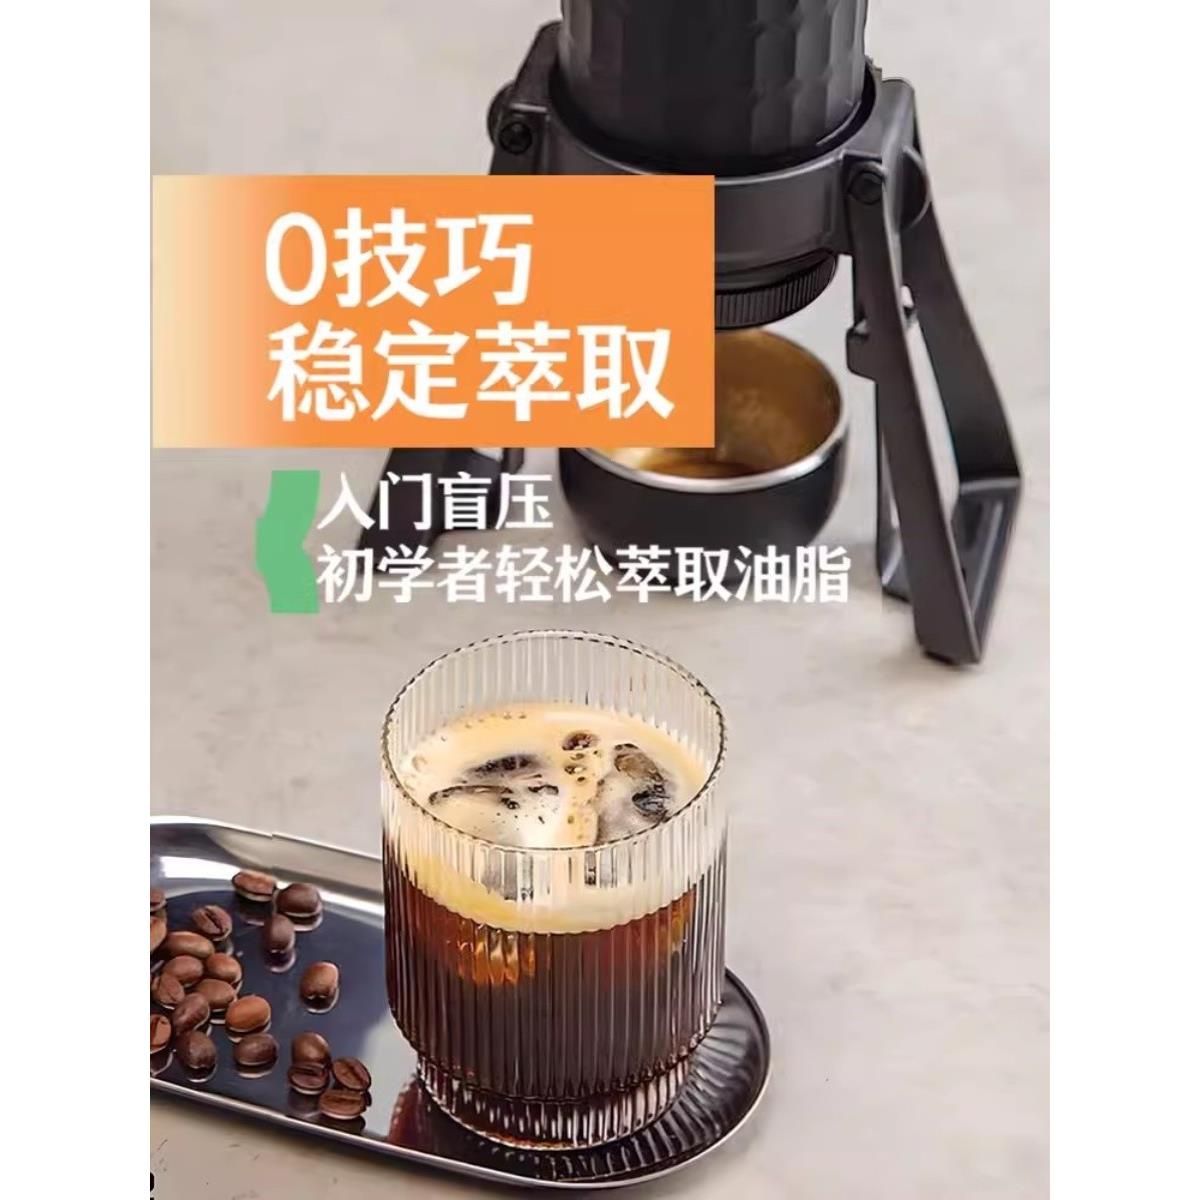 STARESSO星粒三代plus手压咖啡机 便携式浓缩咖啡萃取机旅行户外